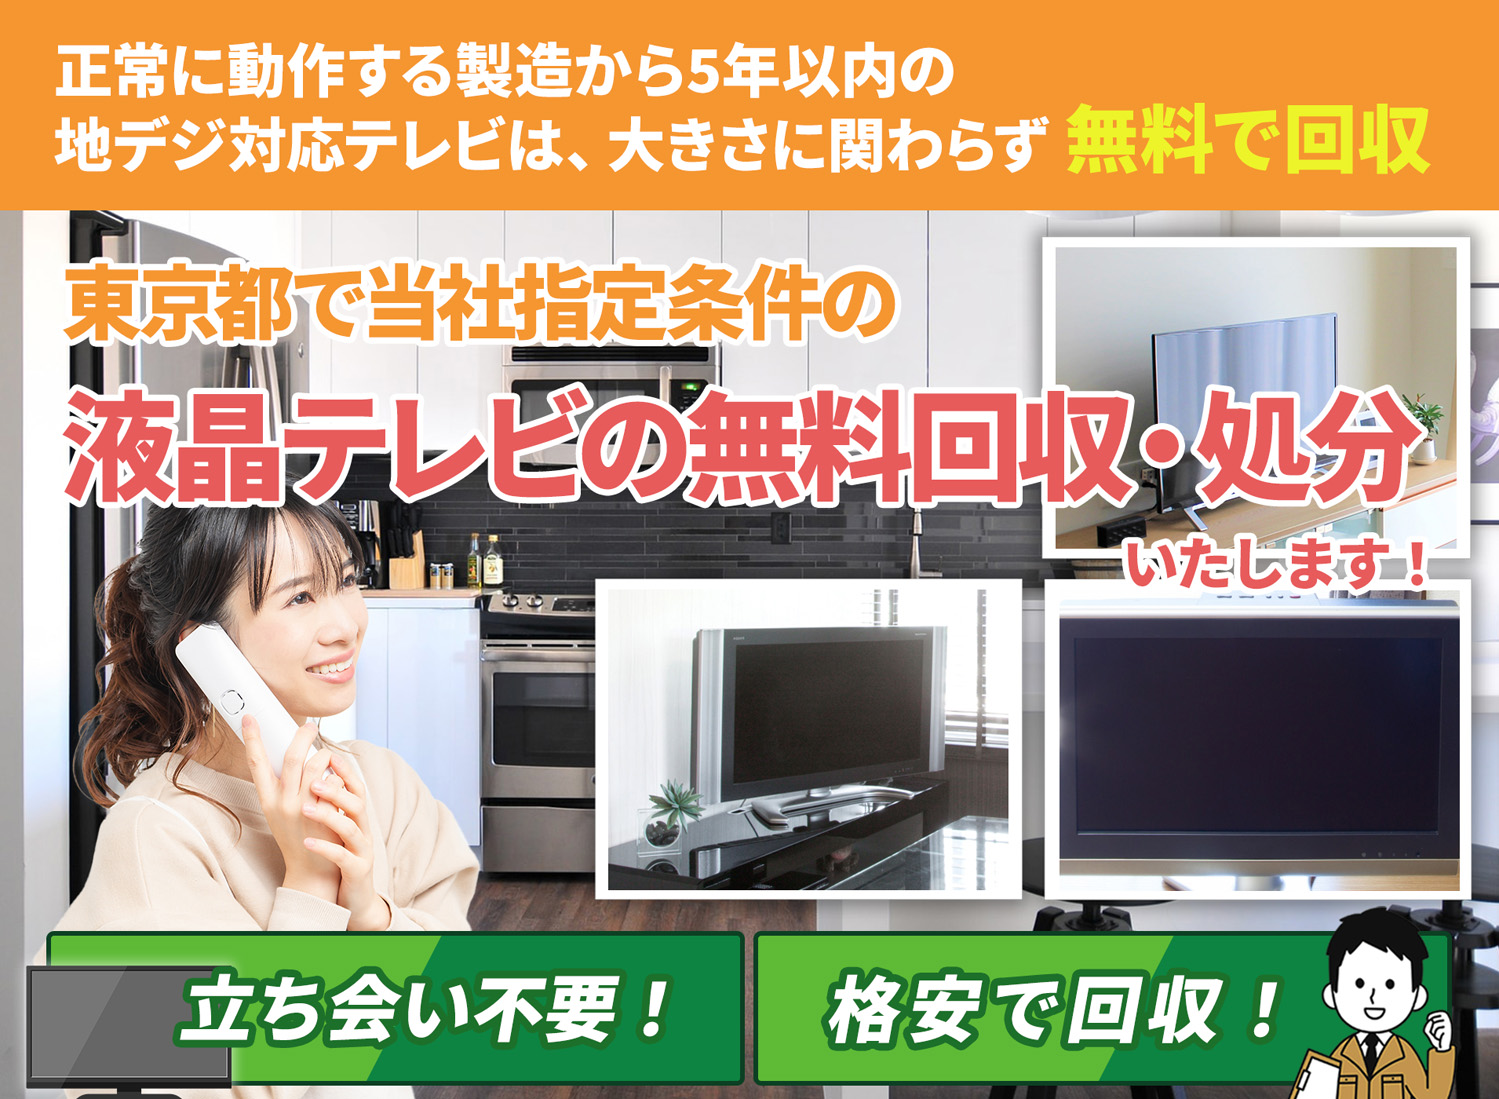 東京都のサービスで地域一番を目指す液晶テレビ無料回収処分隊の液晶テレビ無料回収サービス